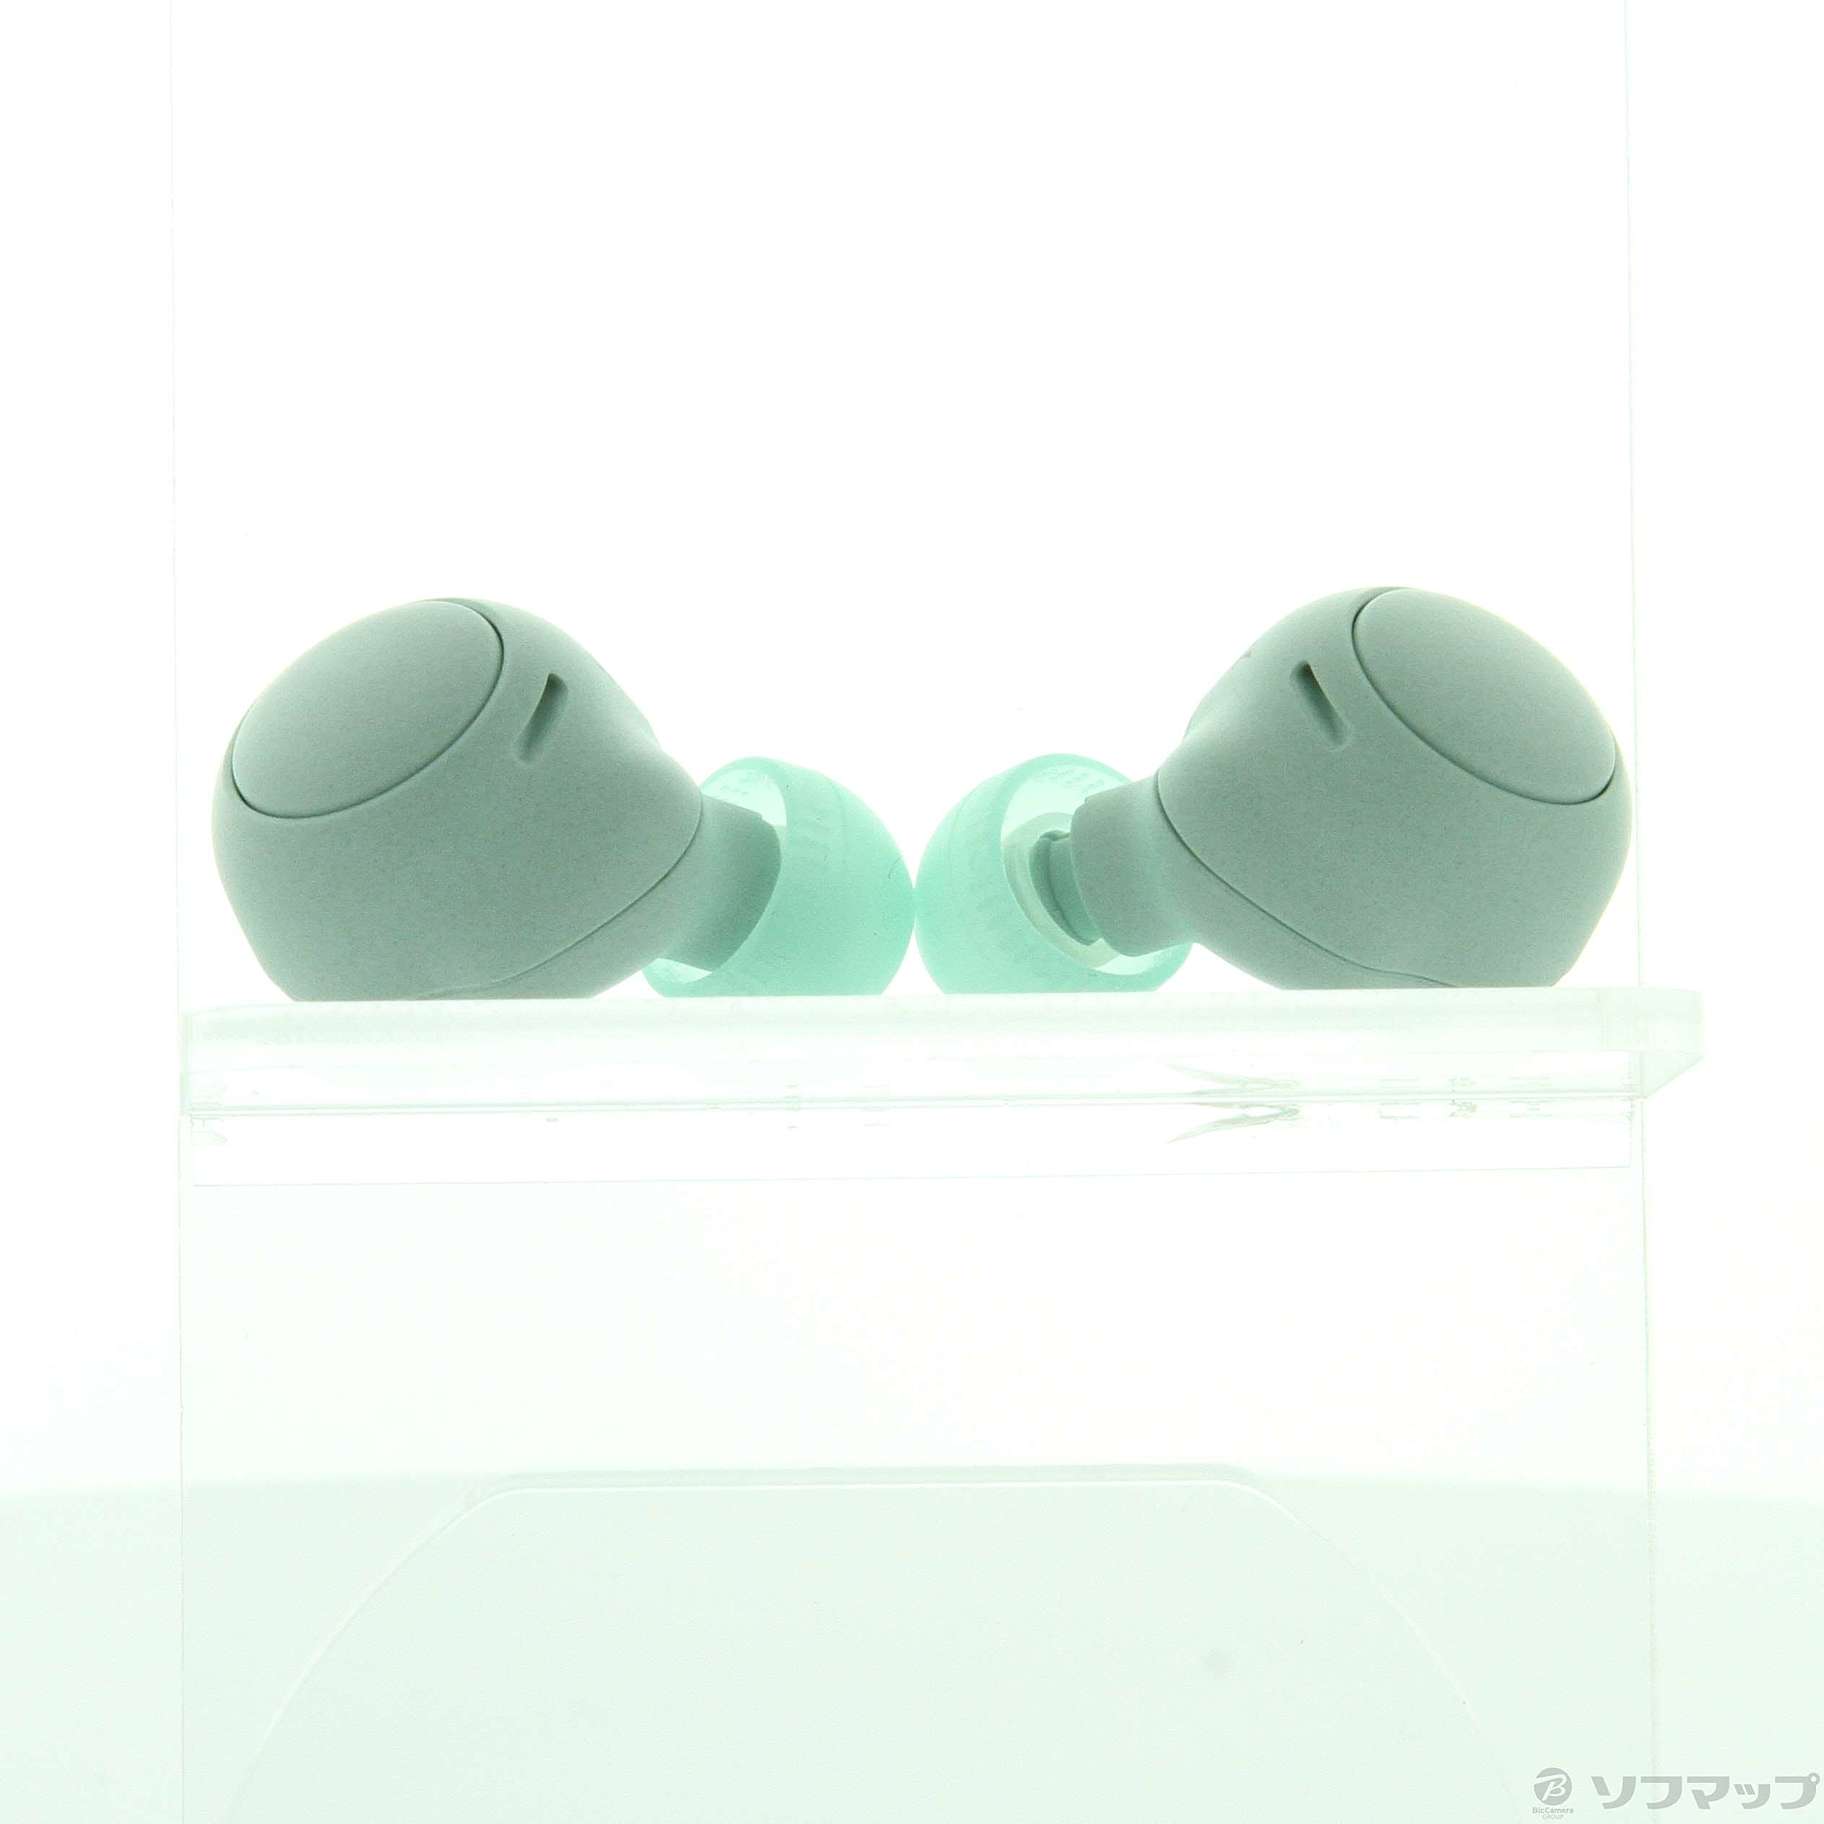 【新品】WF-C500★左耳＆右耳★アイスグリーン